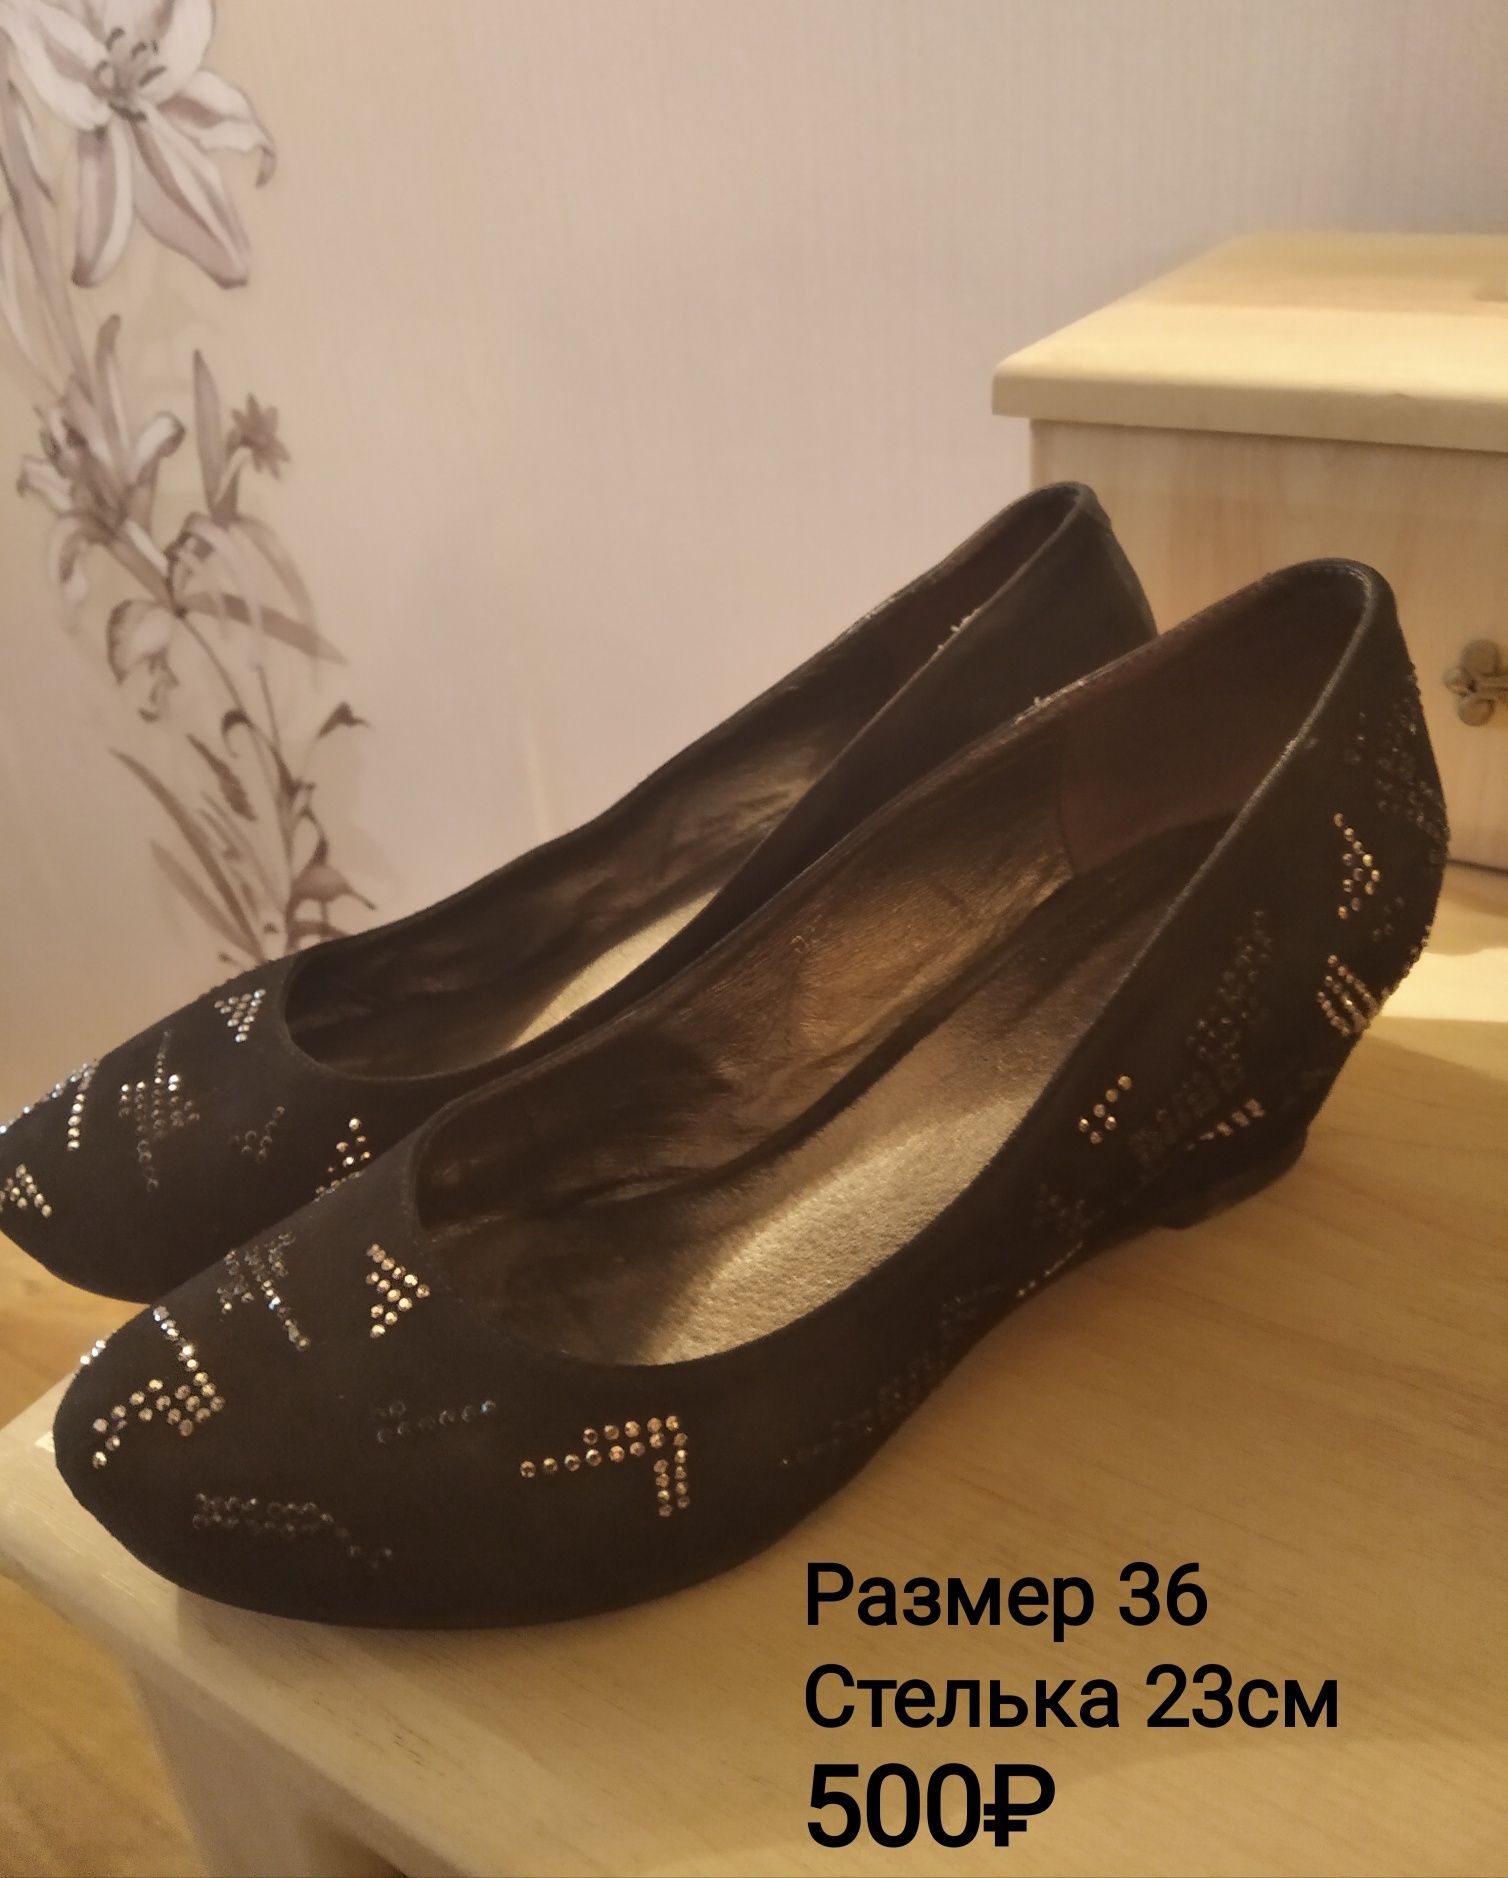 Продам женскую обувь, р. 36-37